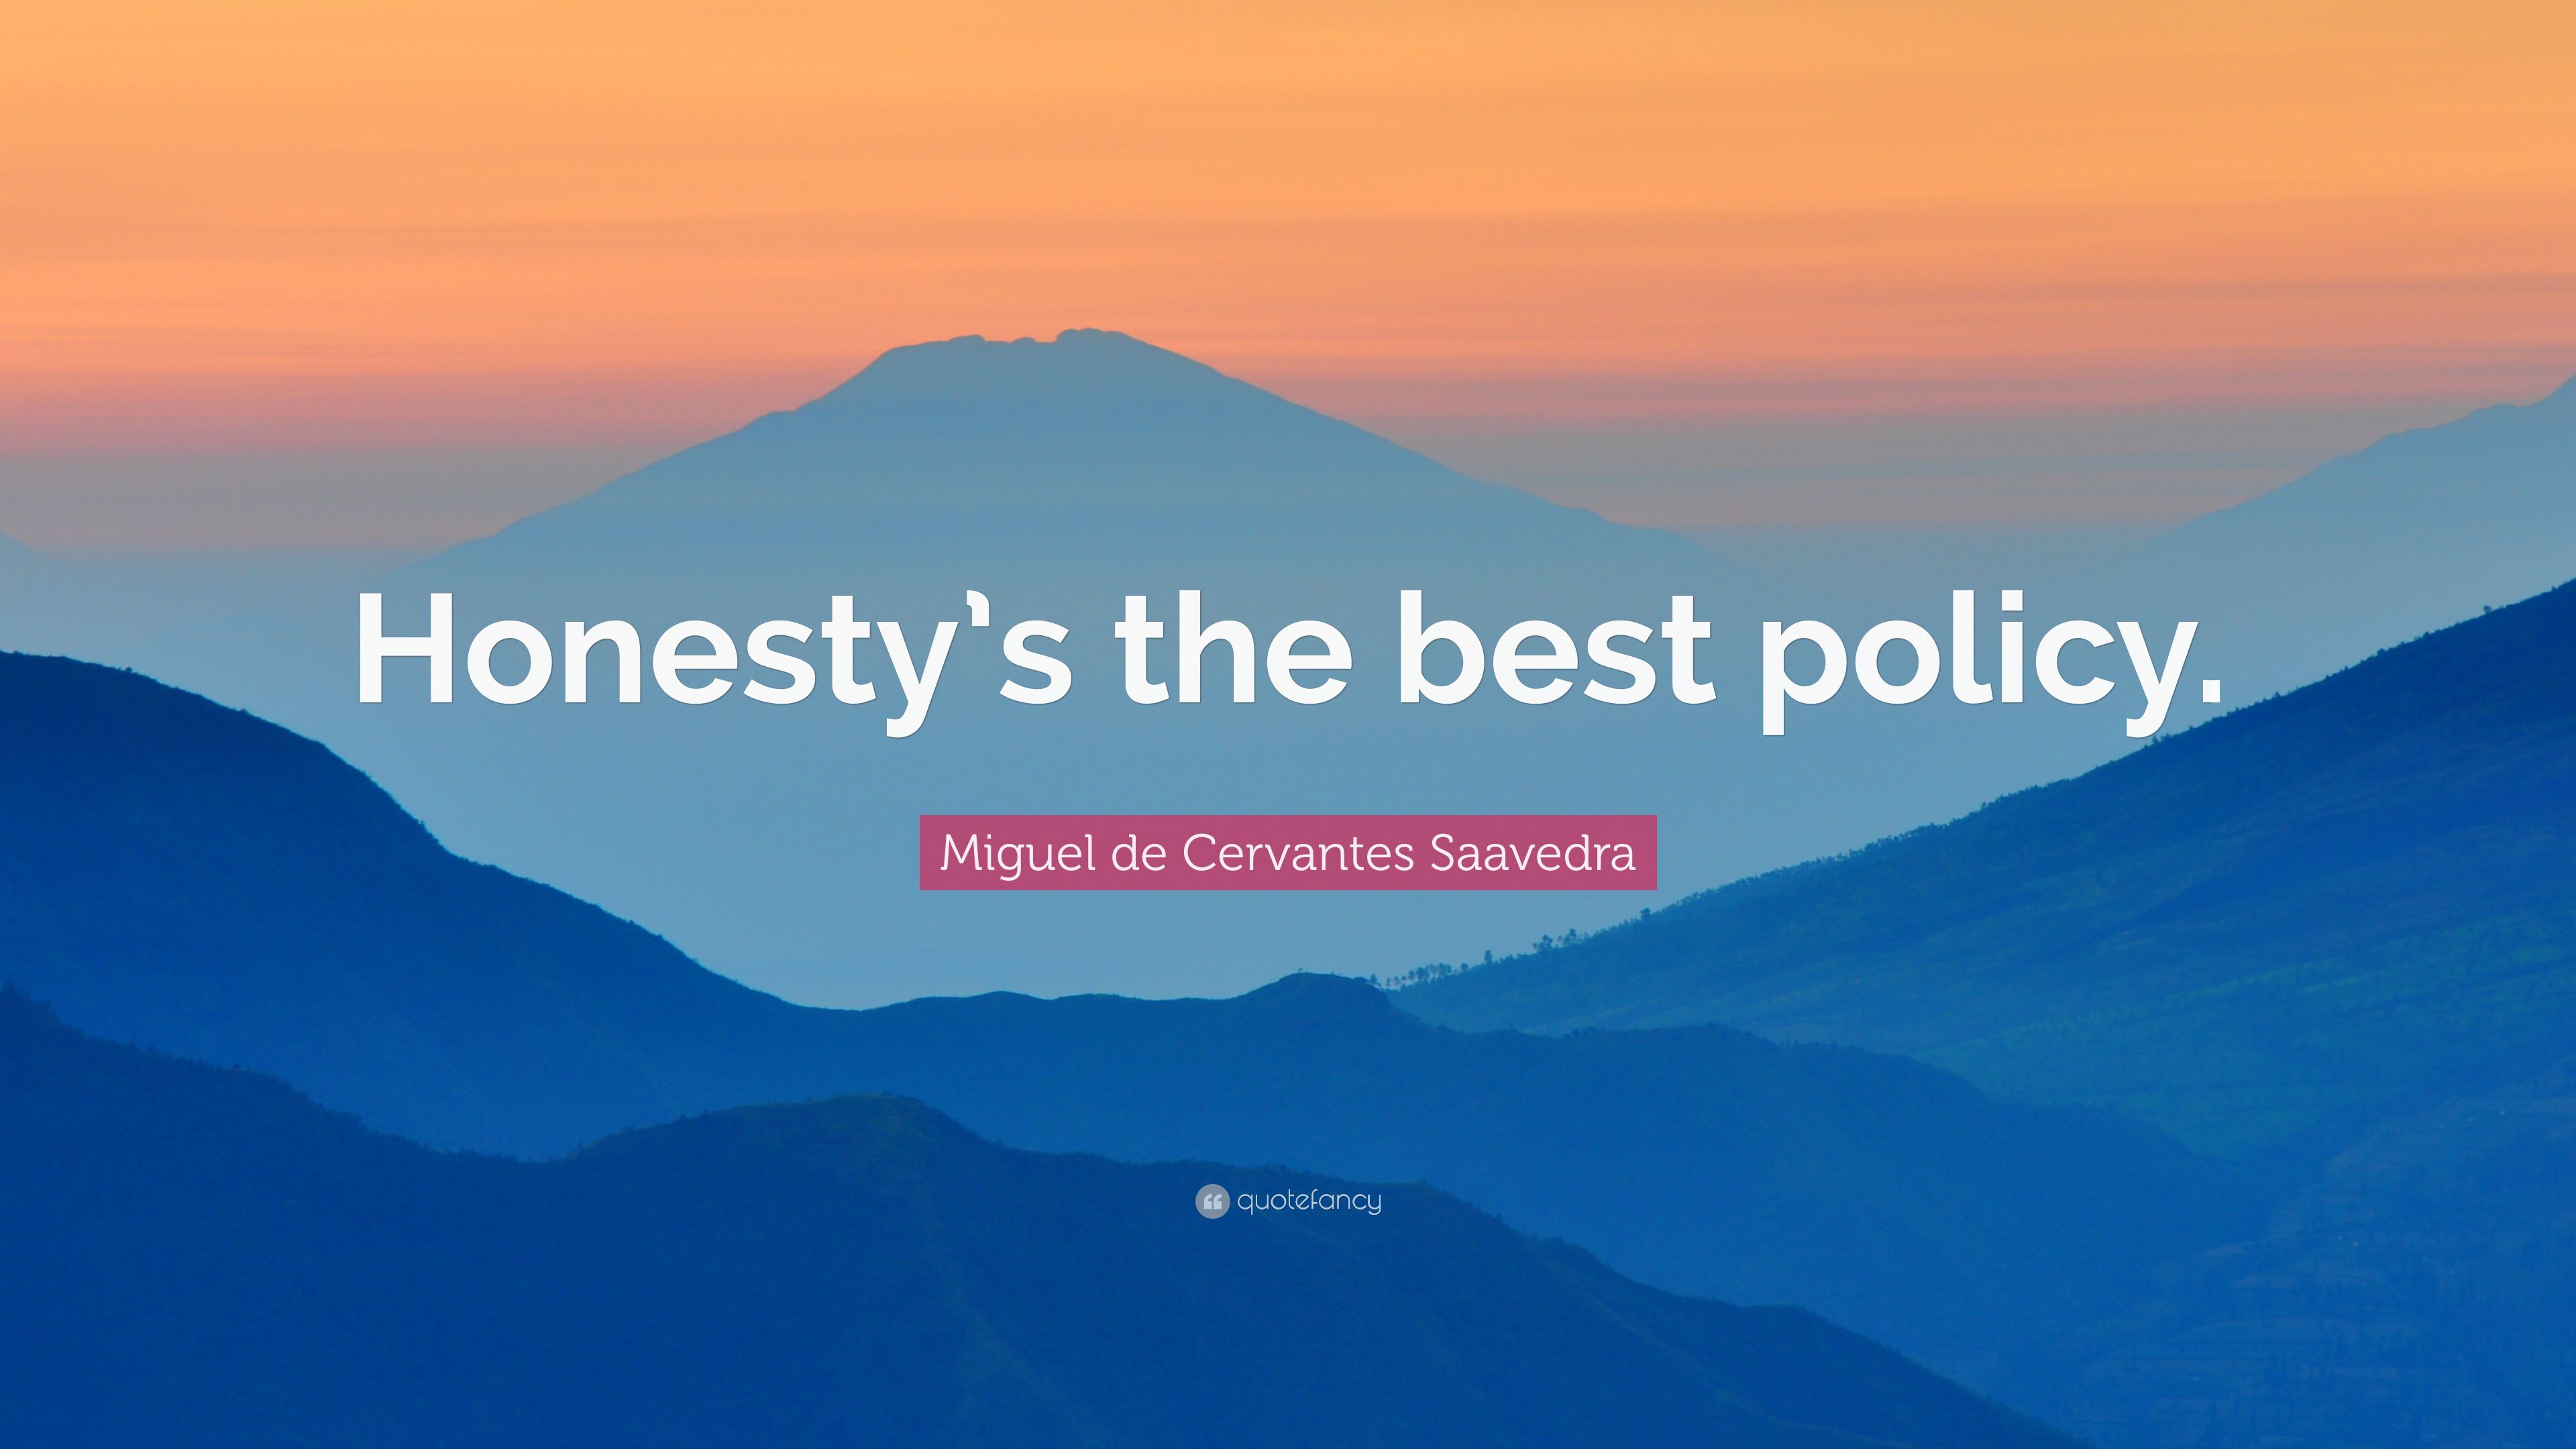 Miguel de Cervantes Saavedra Quote: “Honesty's the best policy.” (9 wallpaper)